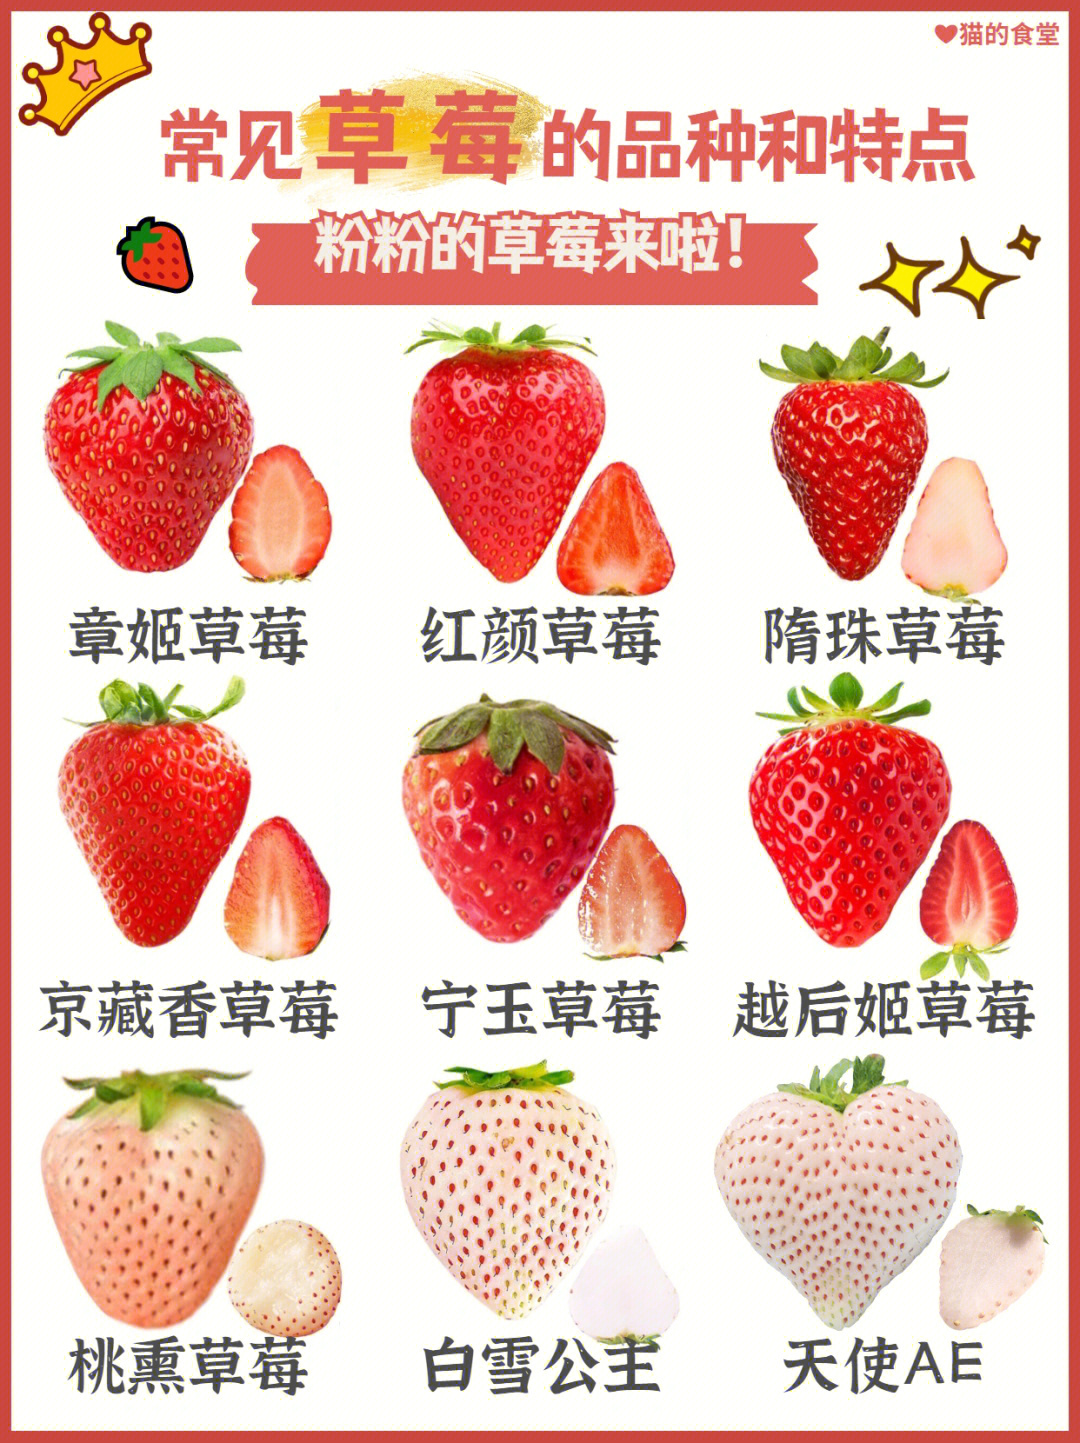 说明书常见草莓的品种和特点